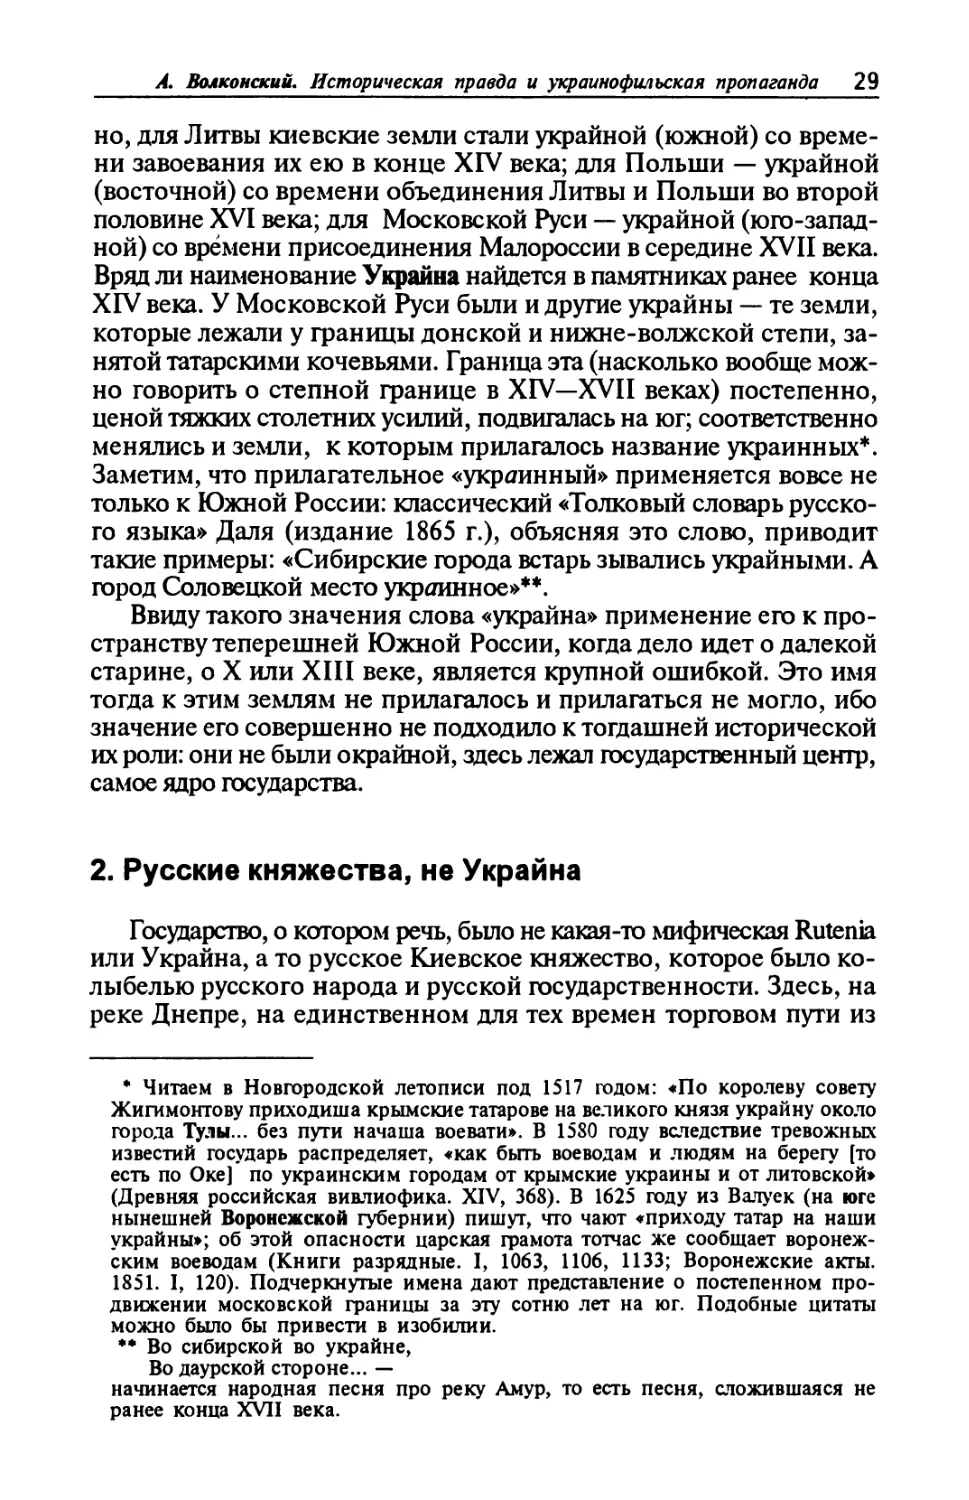 2. Русские княжества, не Украйна